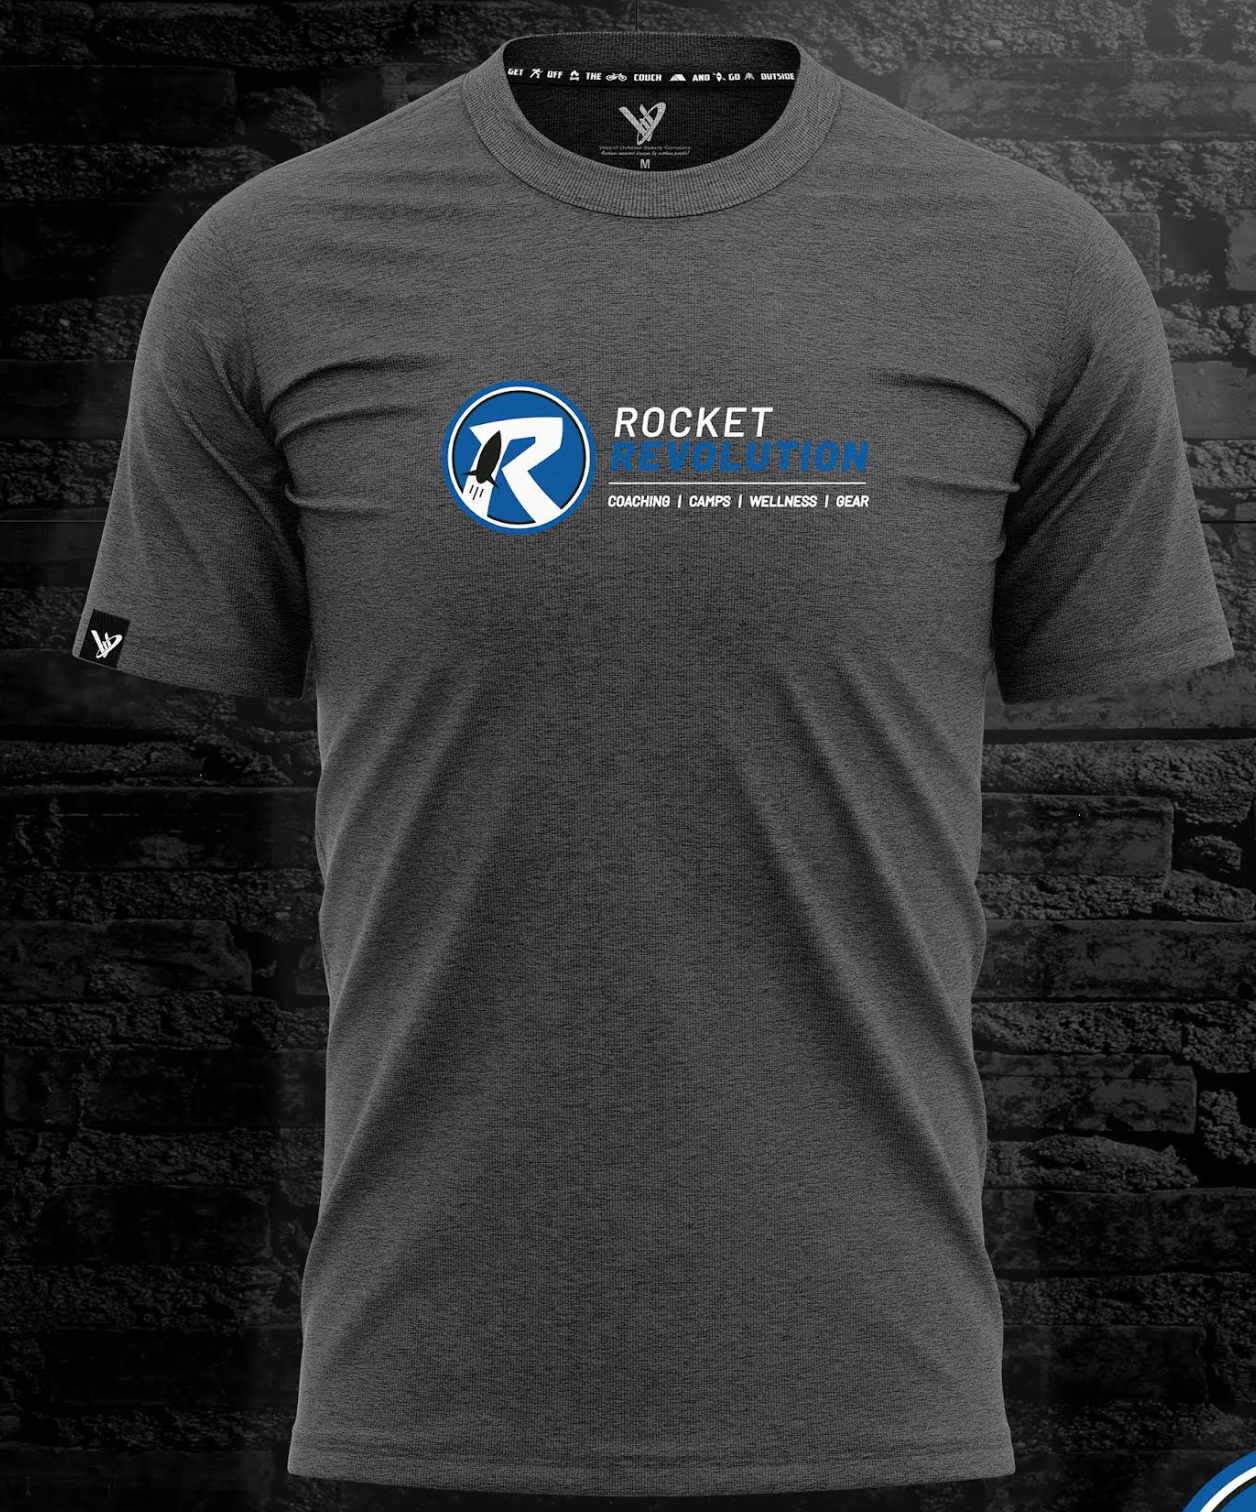 Rocket Revolution Weevil T-shirt